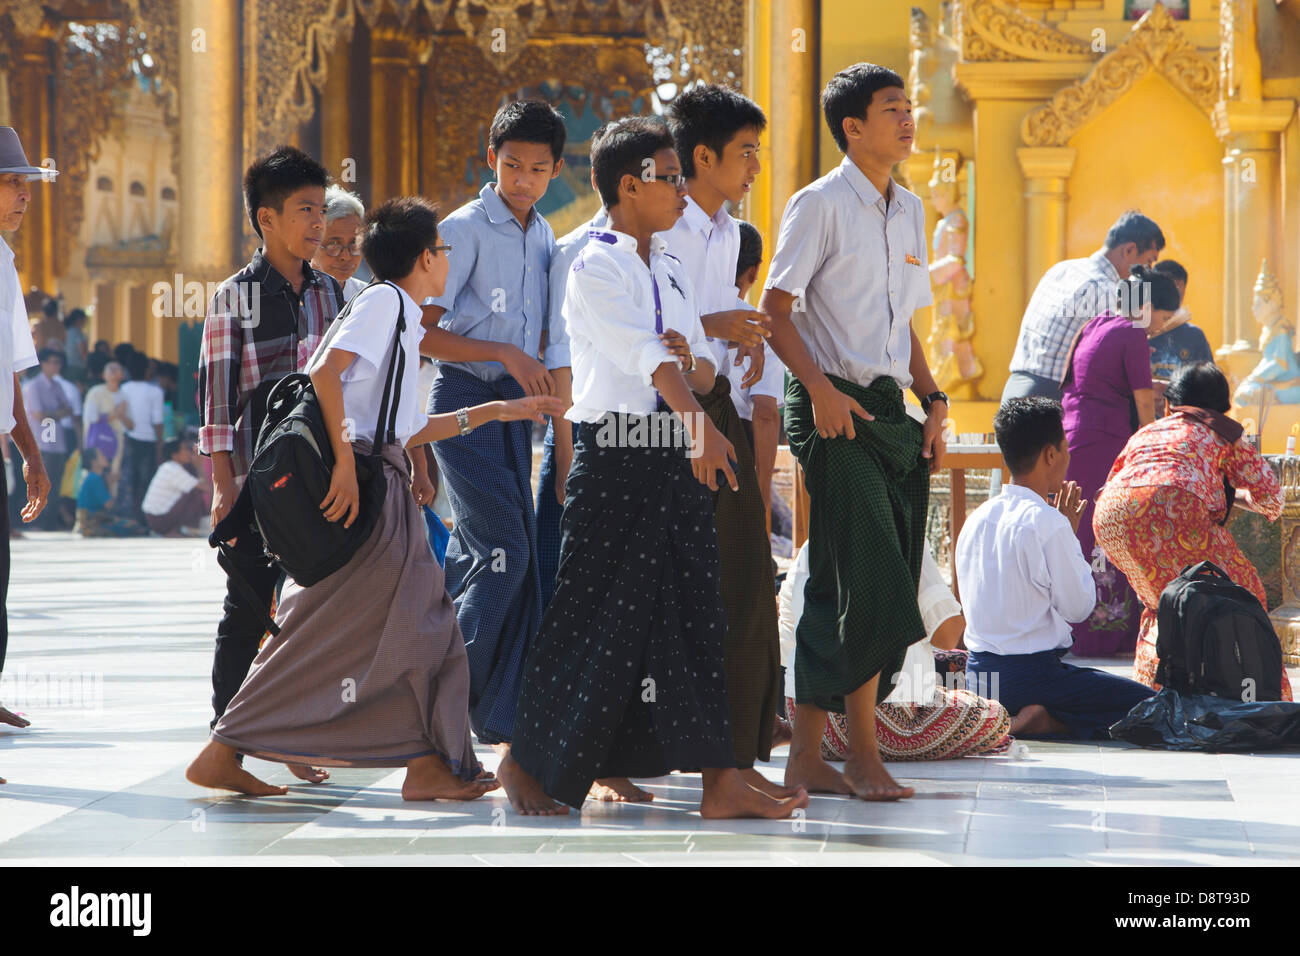 Un groupe de garçons birmans parmi les fidèles au temple bouddhiste Schwedagon qui est le symbole de Yangon (Rangoon). Banque D'Images